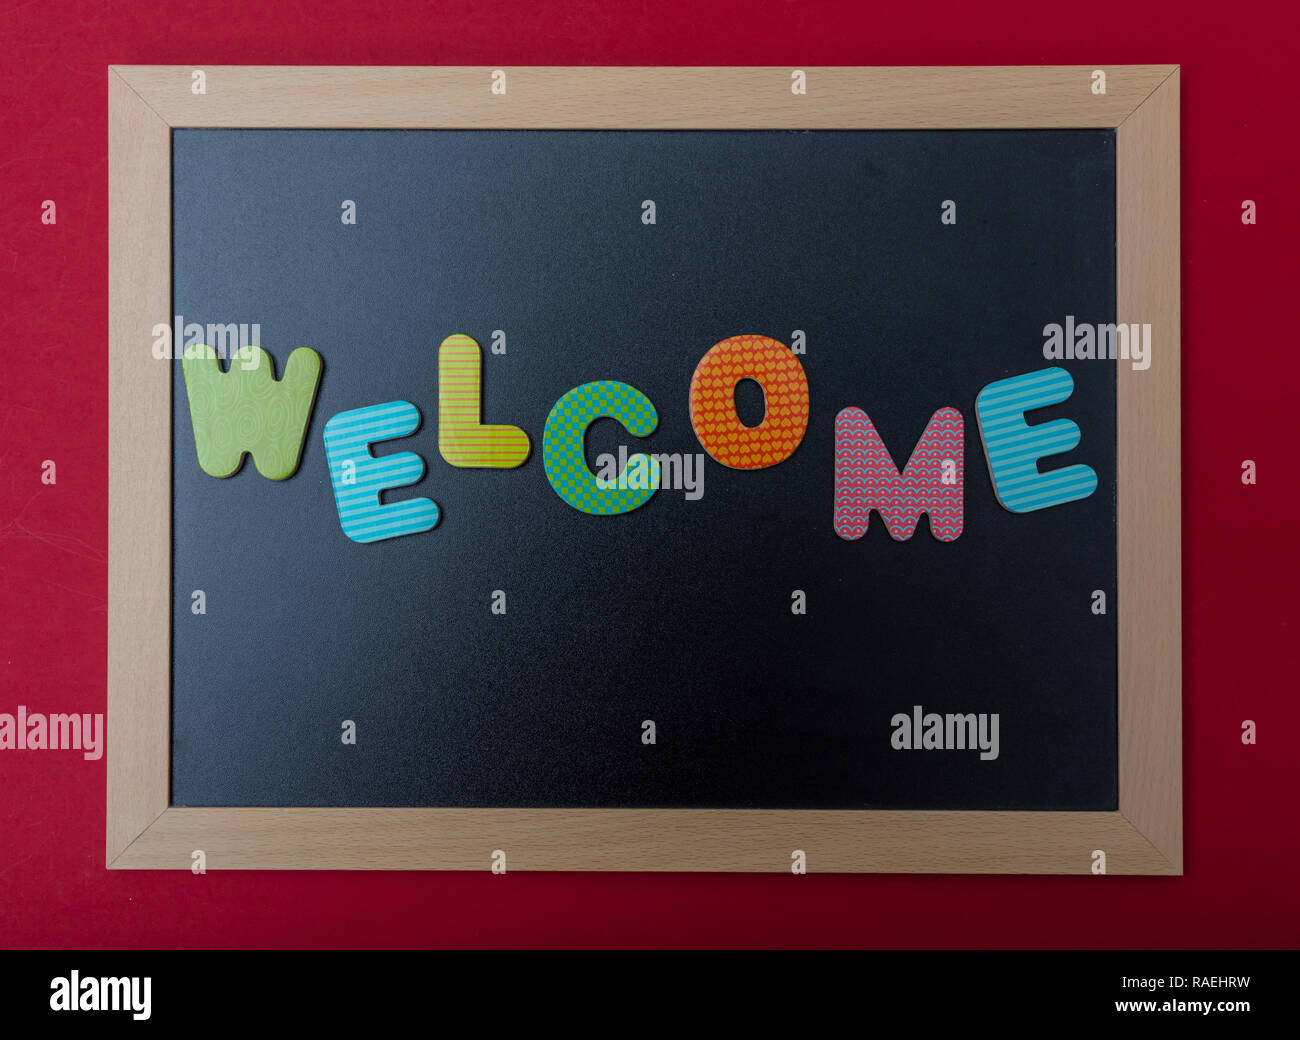 Willkommen. Vorstand mit schwarzem Rahmen, Text Willkommen in bunten Buchstaben, rote Wand Hintergrund Stockfoto